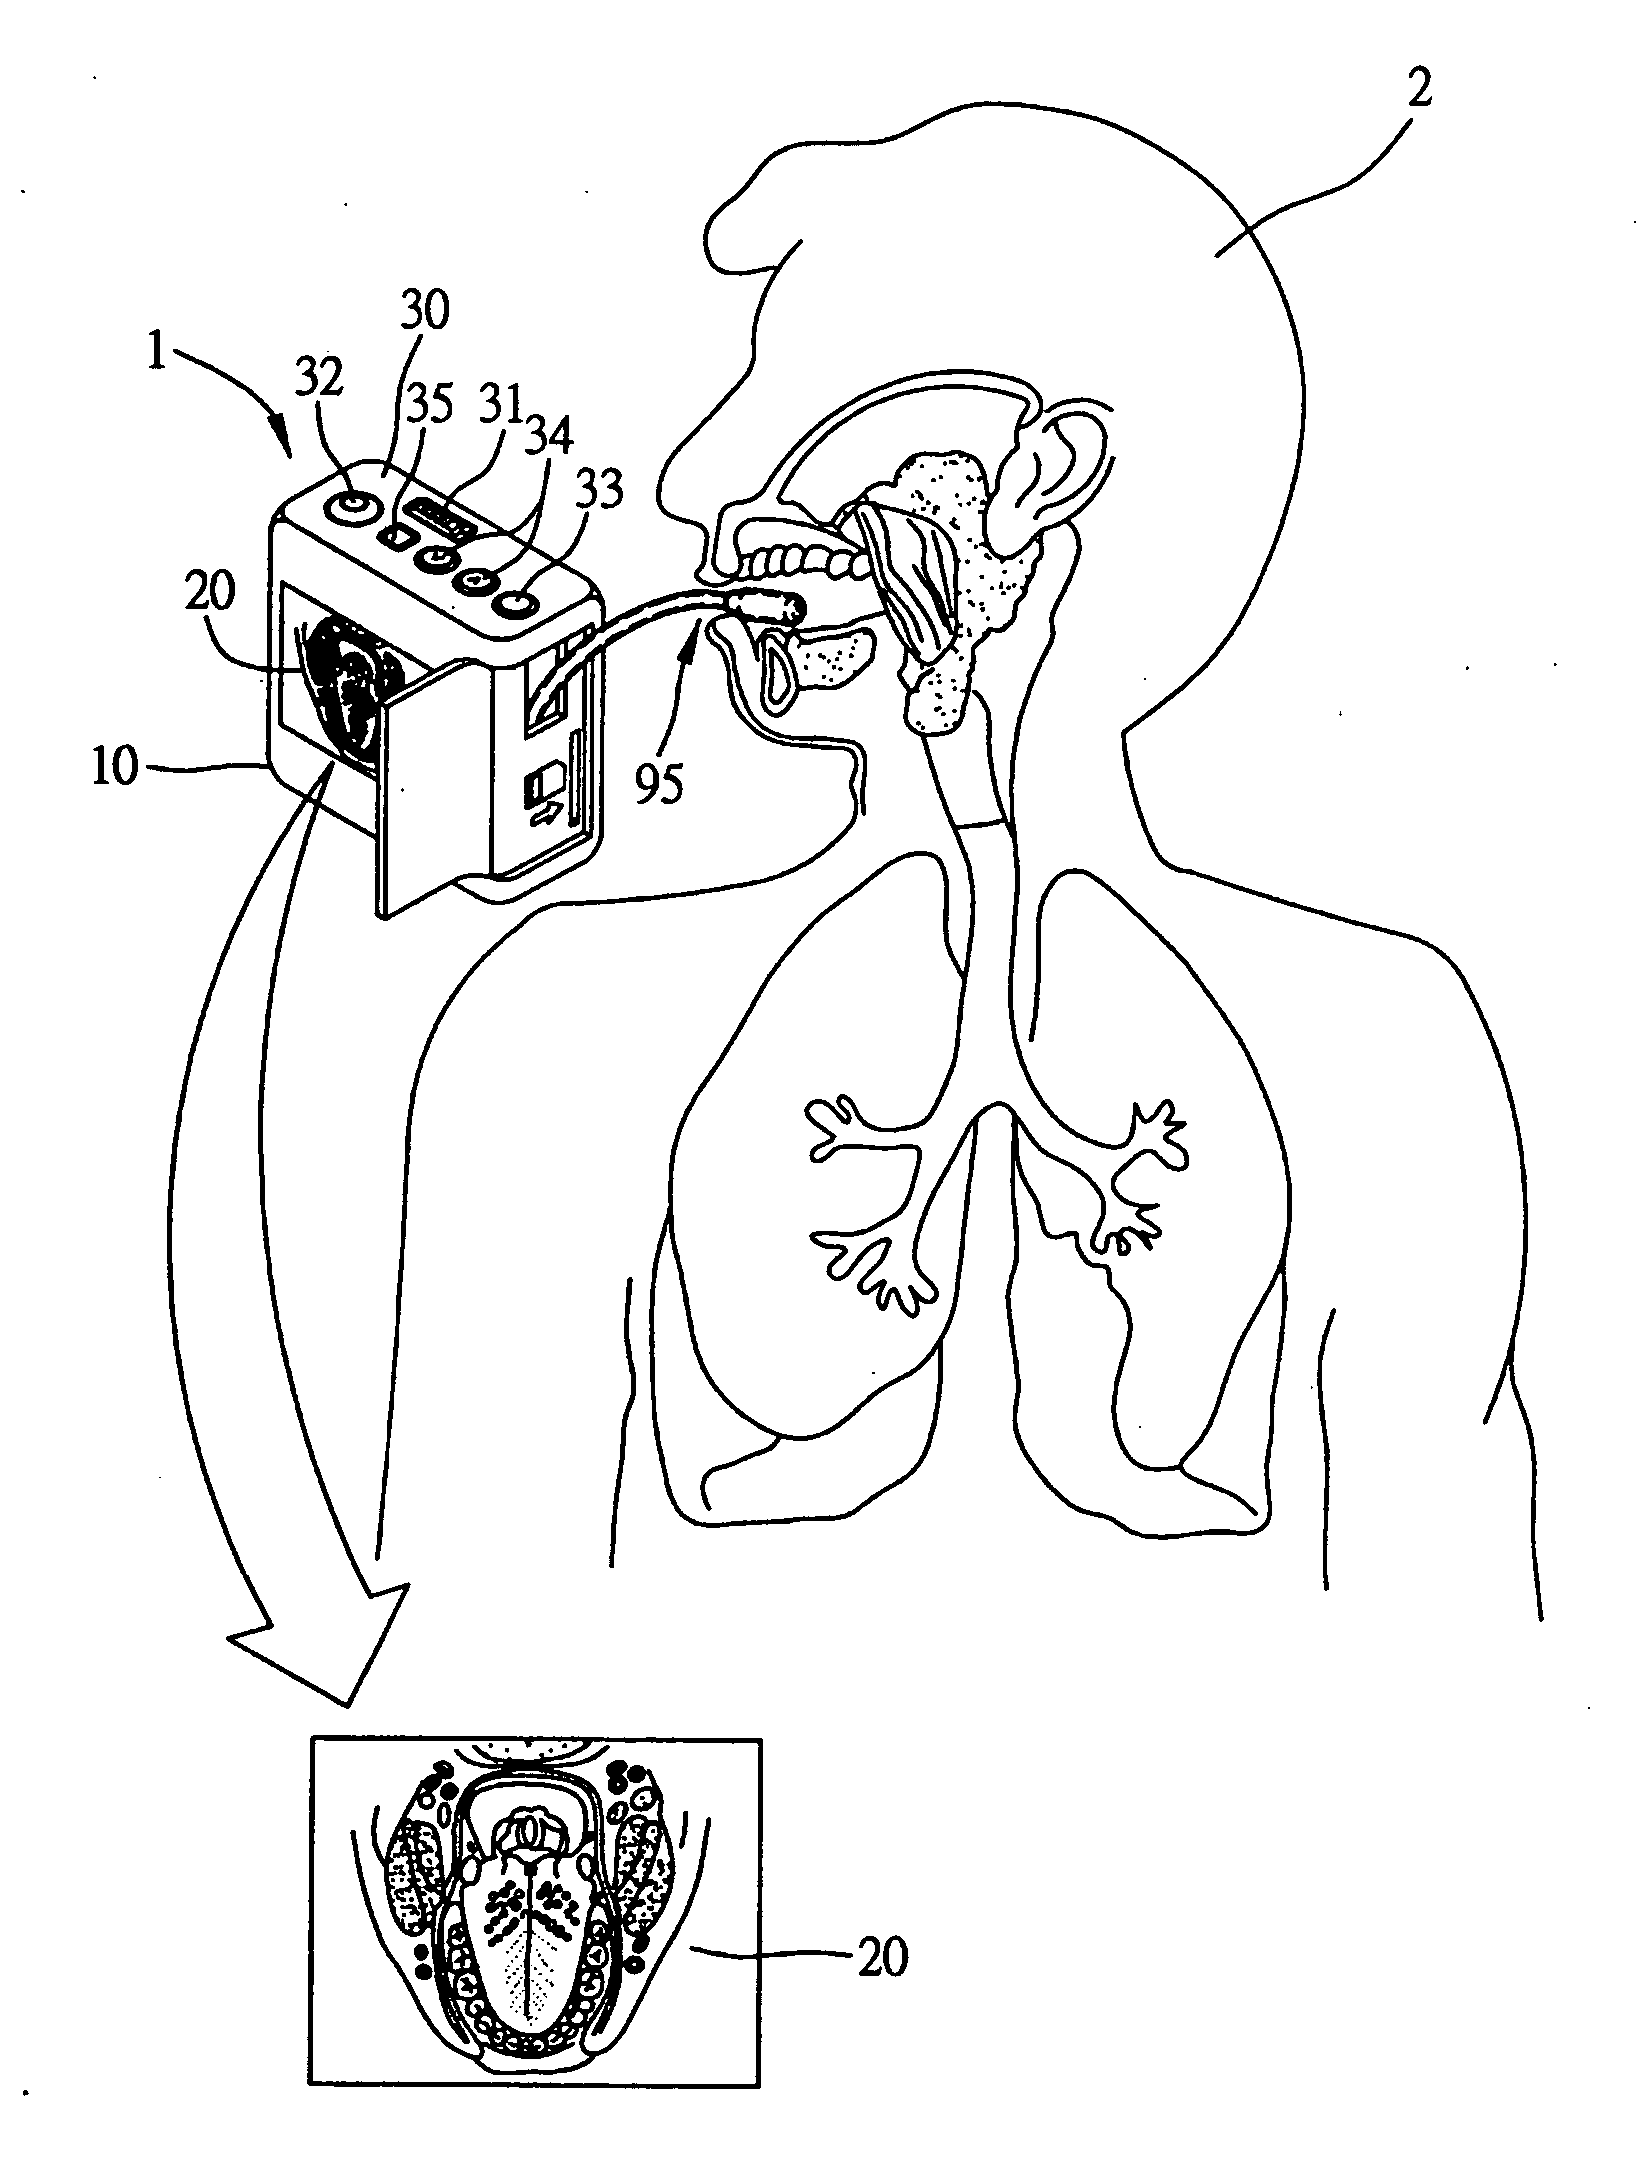 Endoscope apparatus